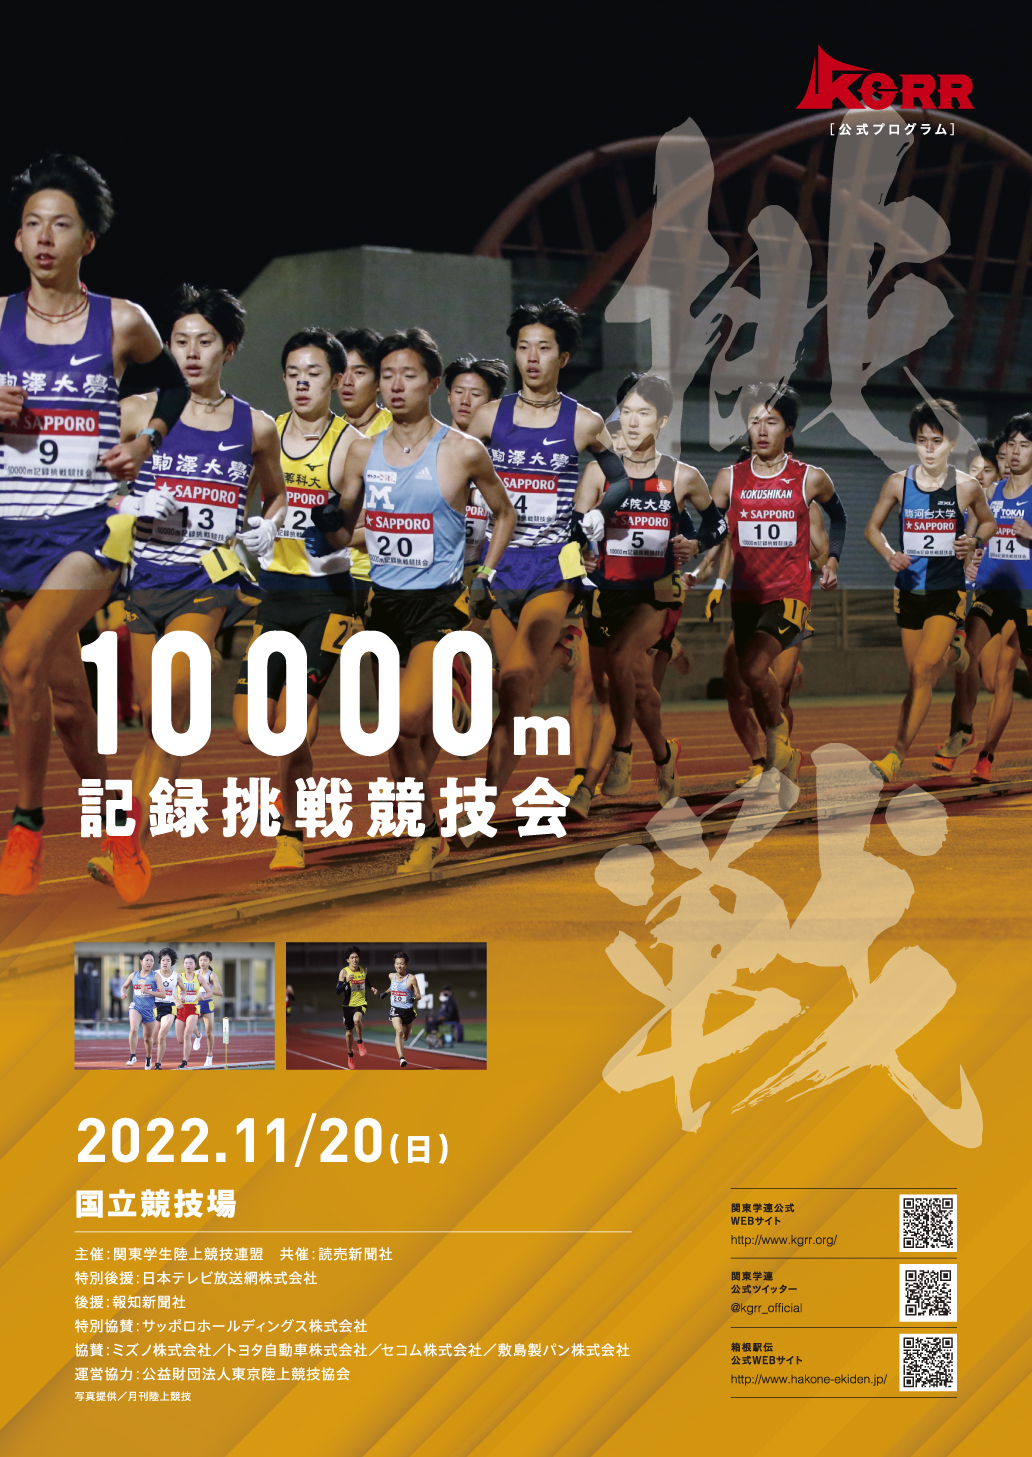  10000m記録挑戦競技会